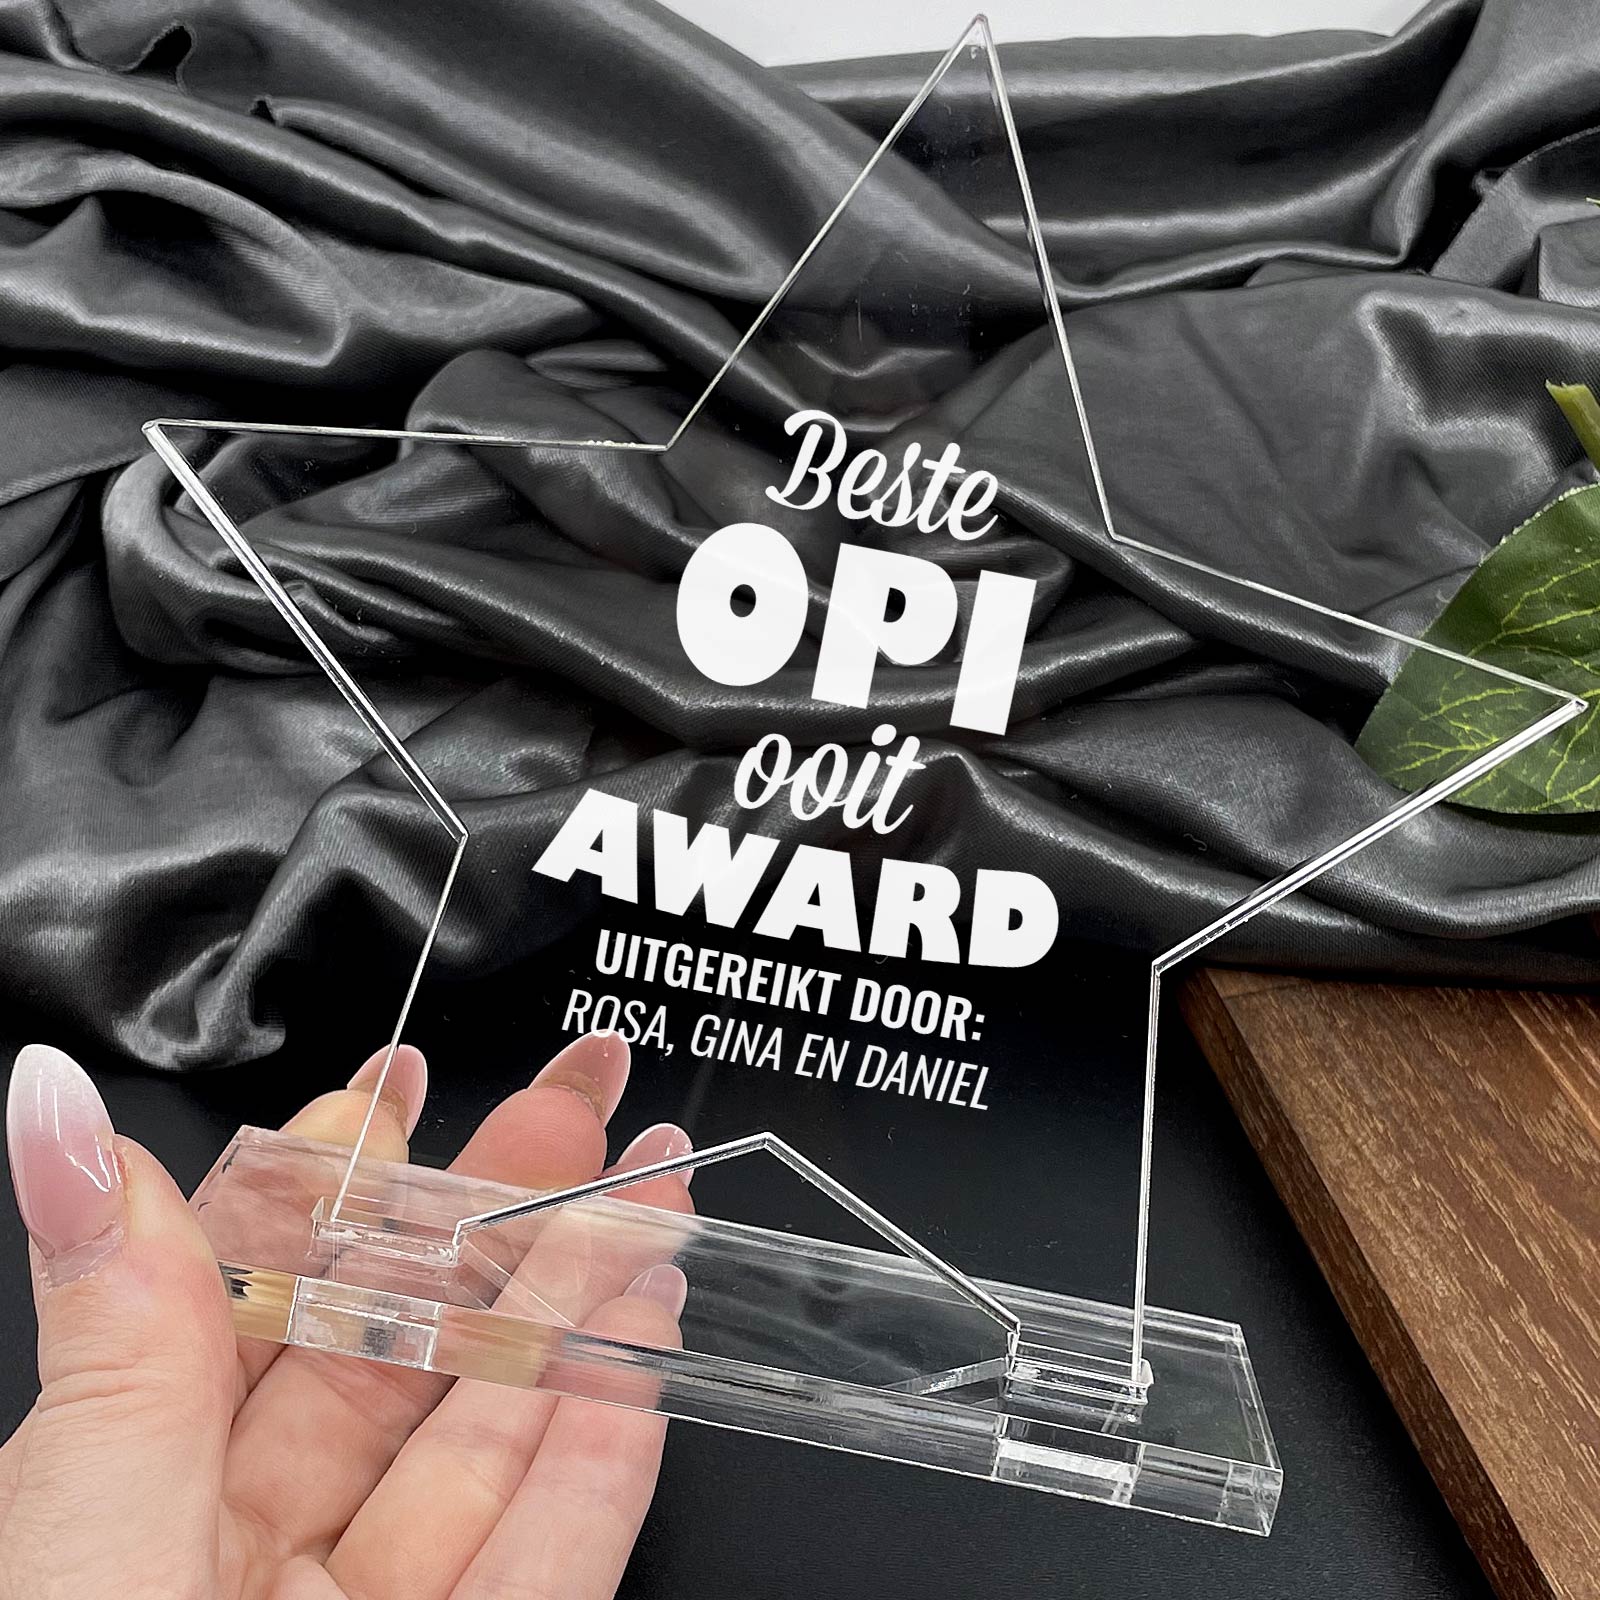 Beste Opi Ooit Award - Bella Mia